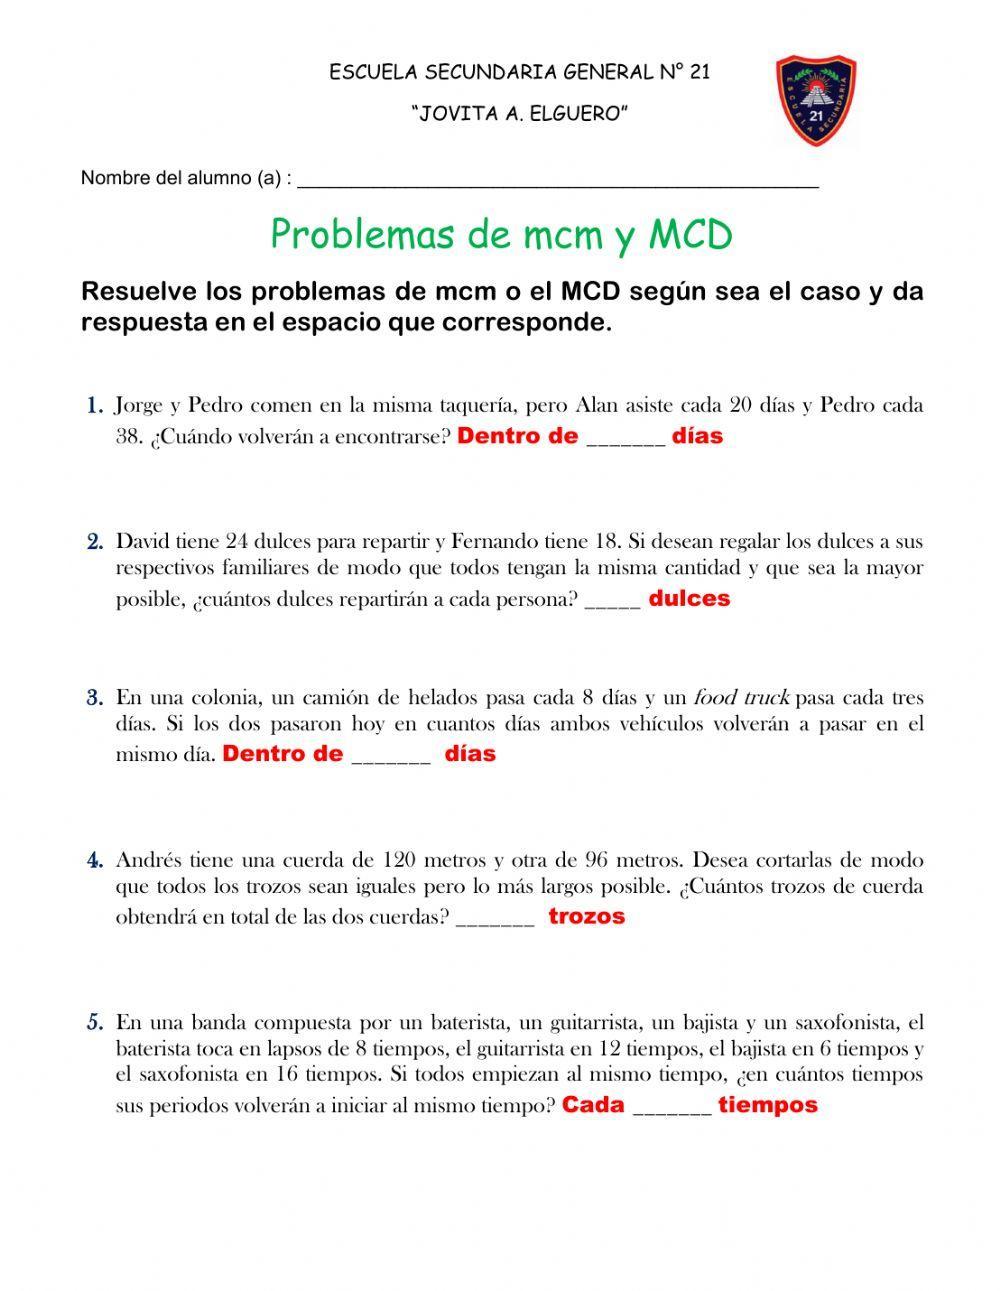 Problemas de mcm y MCD